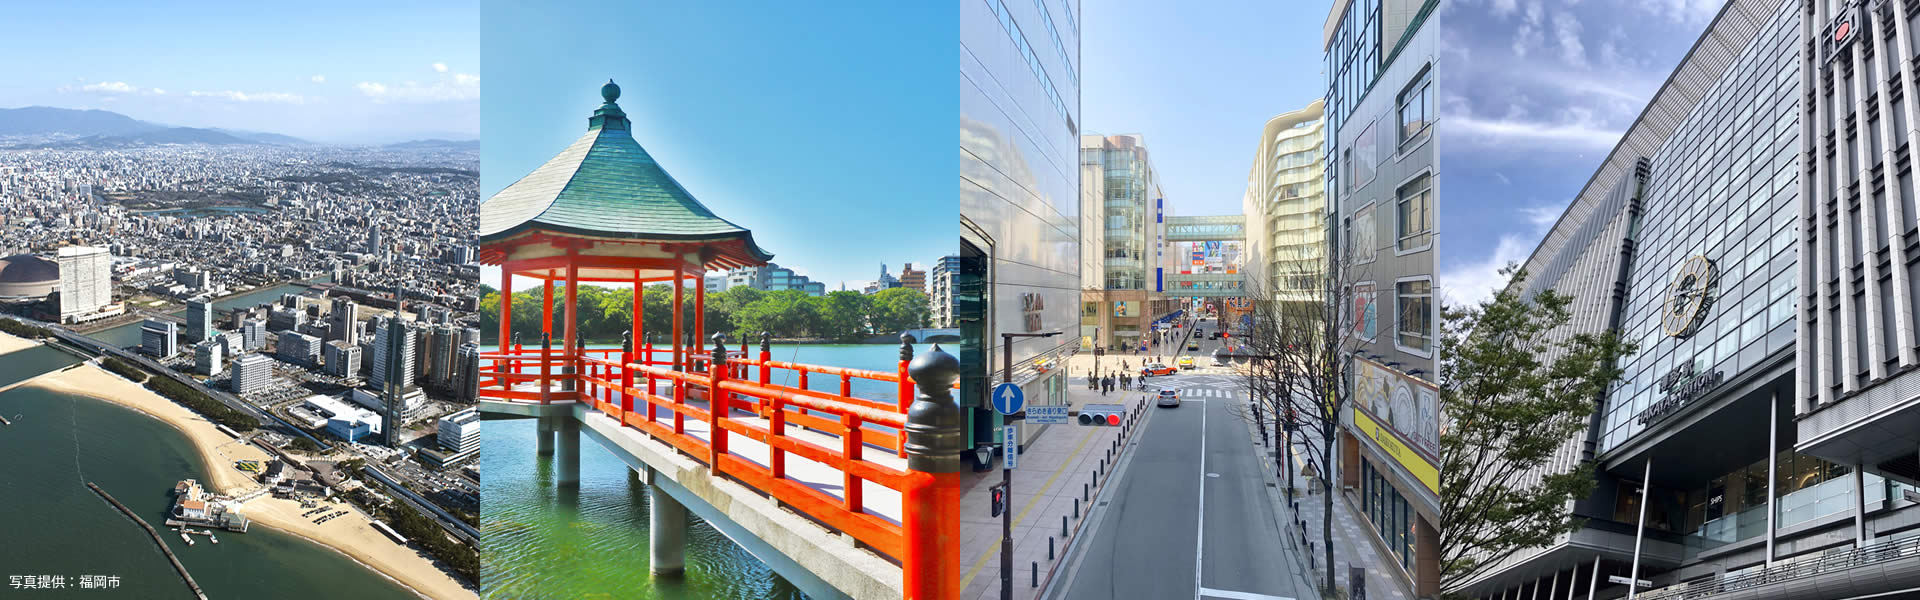 今、日本でもっとも高く評価されている福岡で不動産投資を